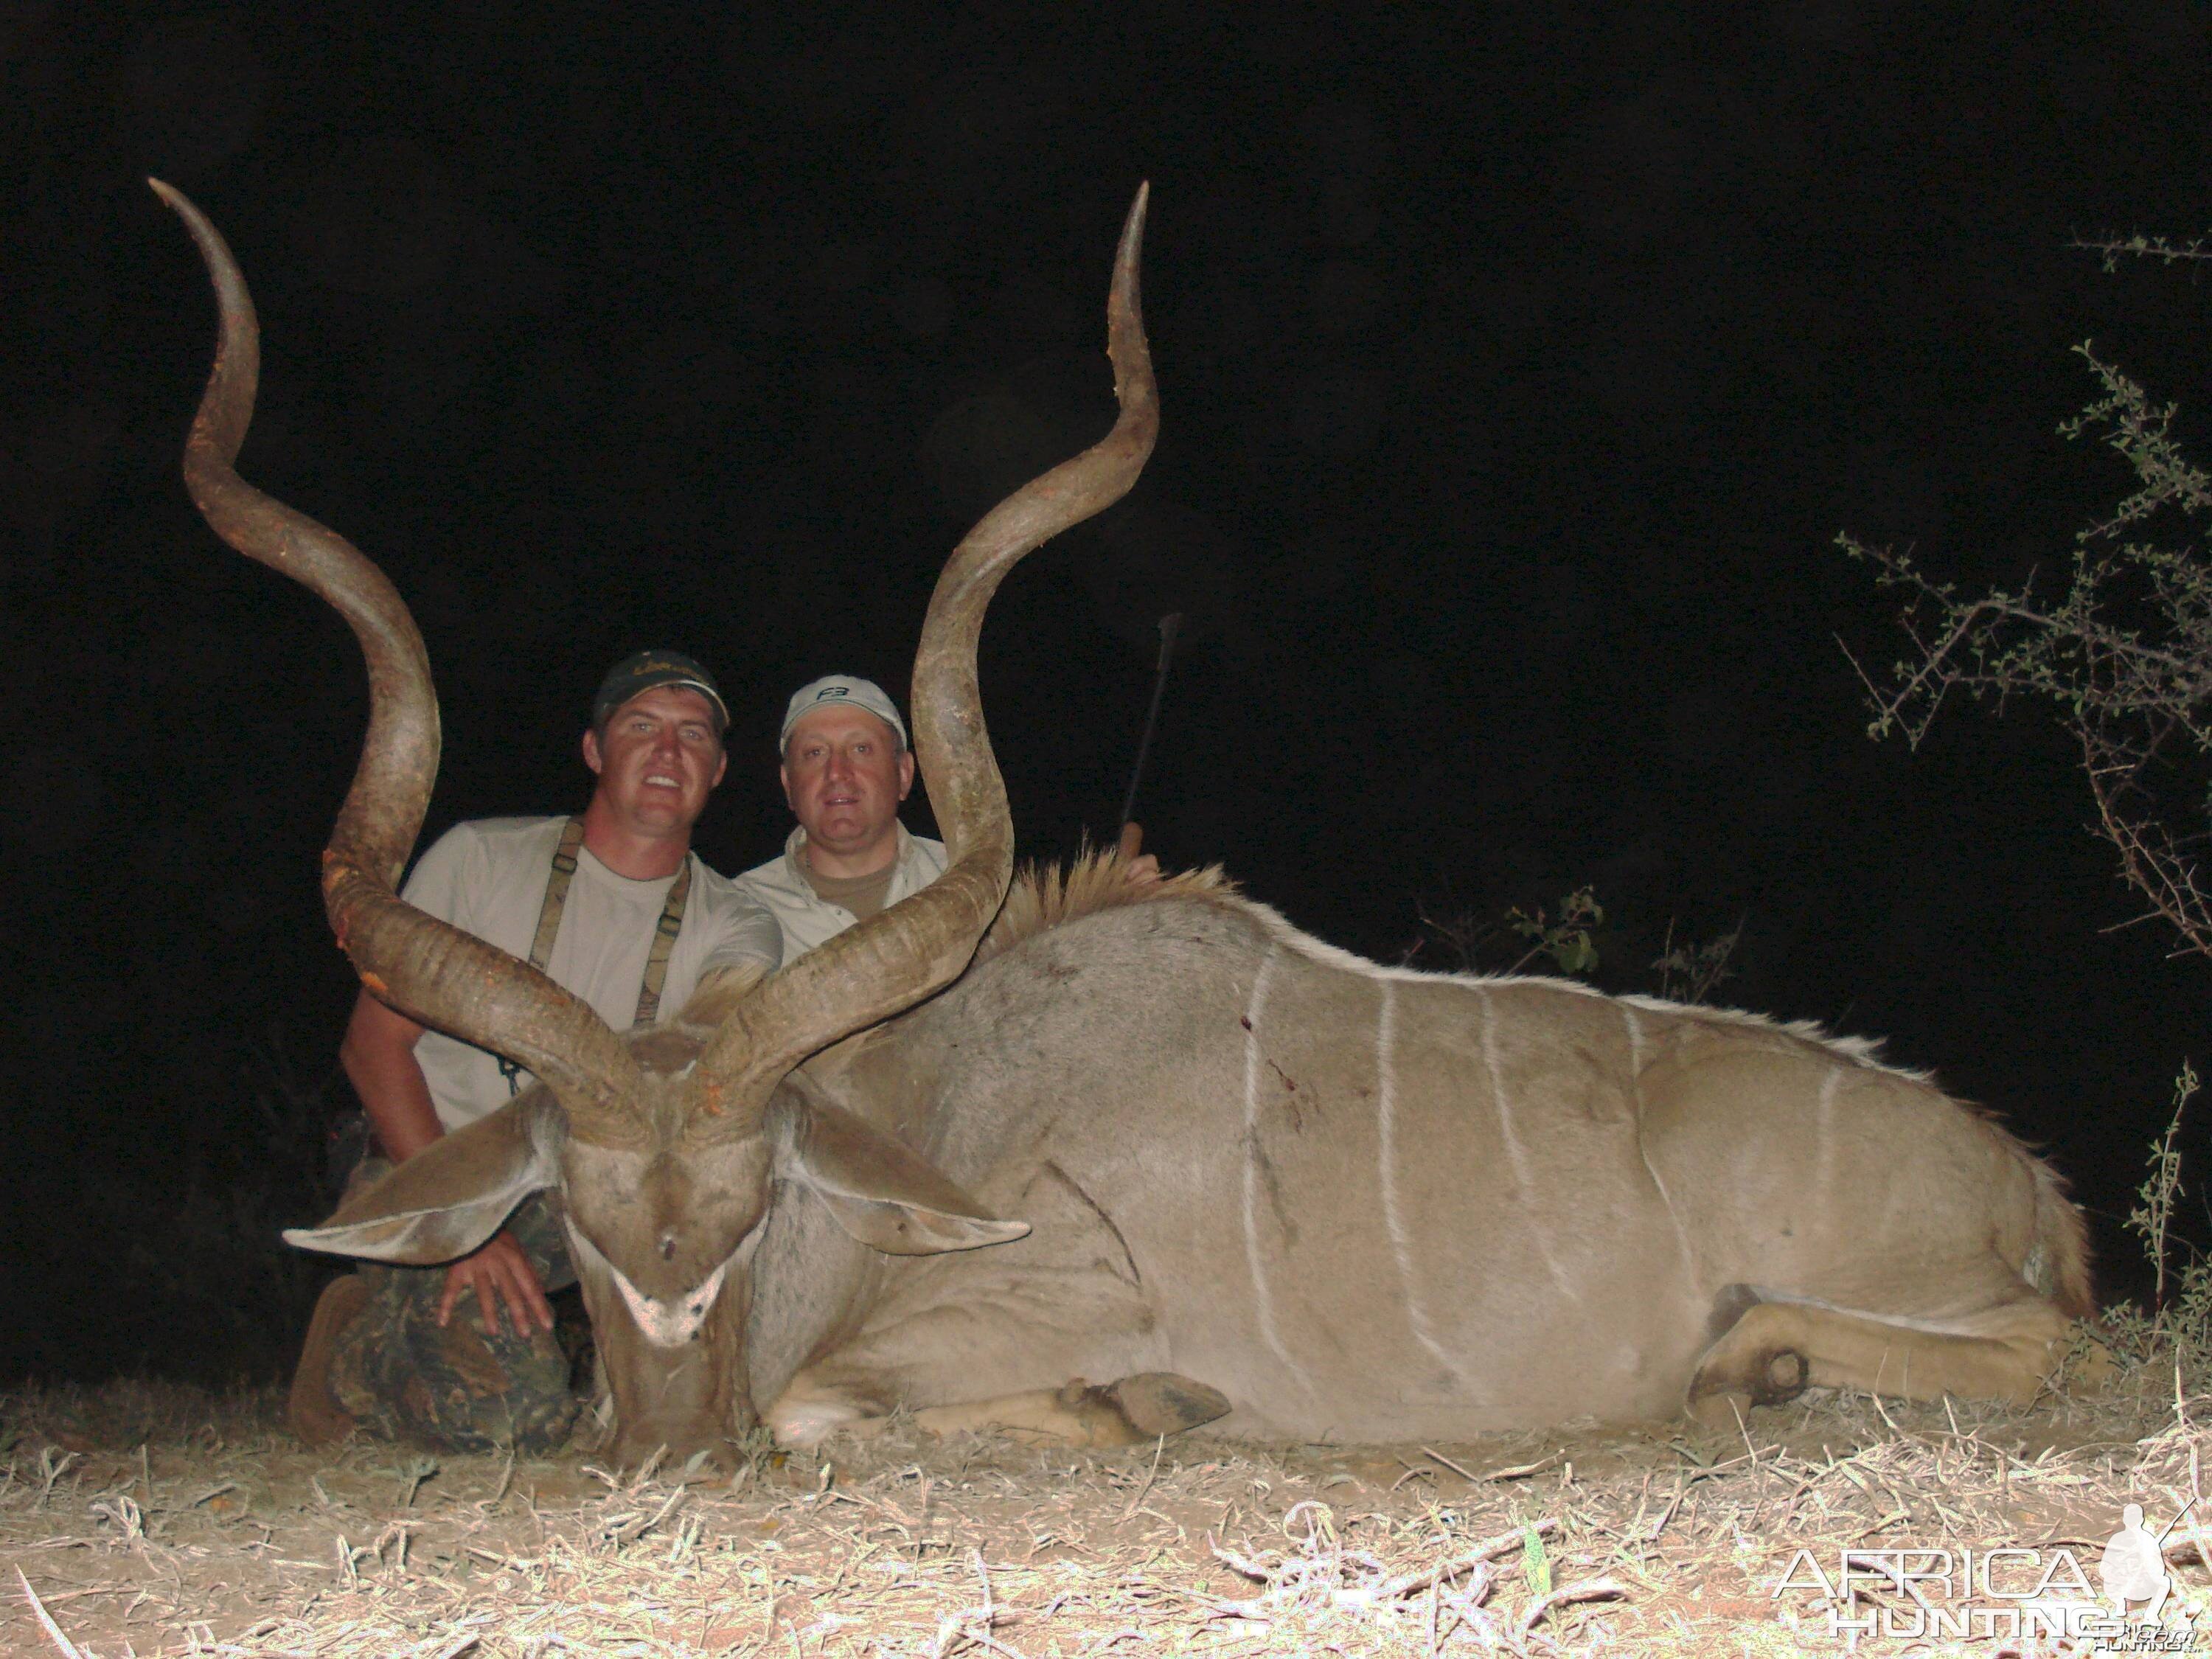 Greater Kudu Hunt